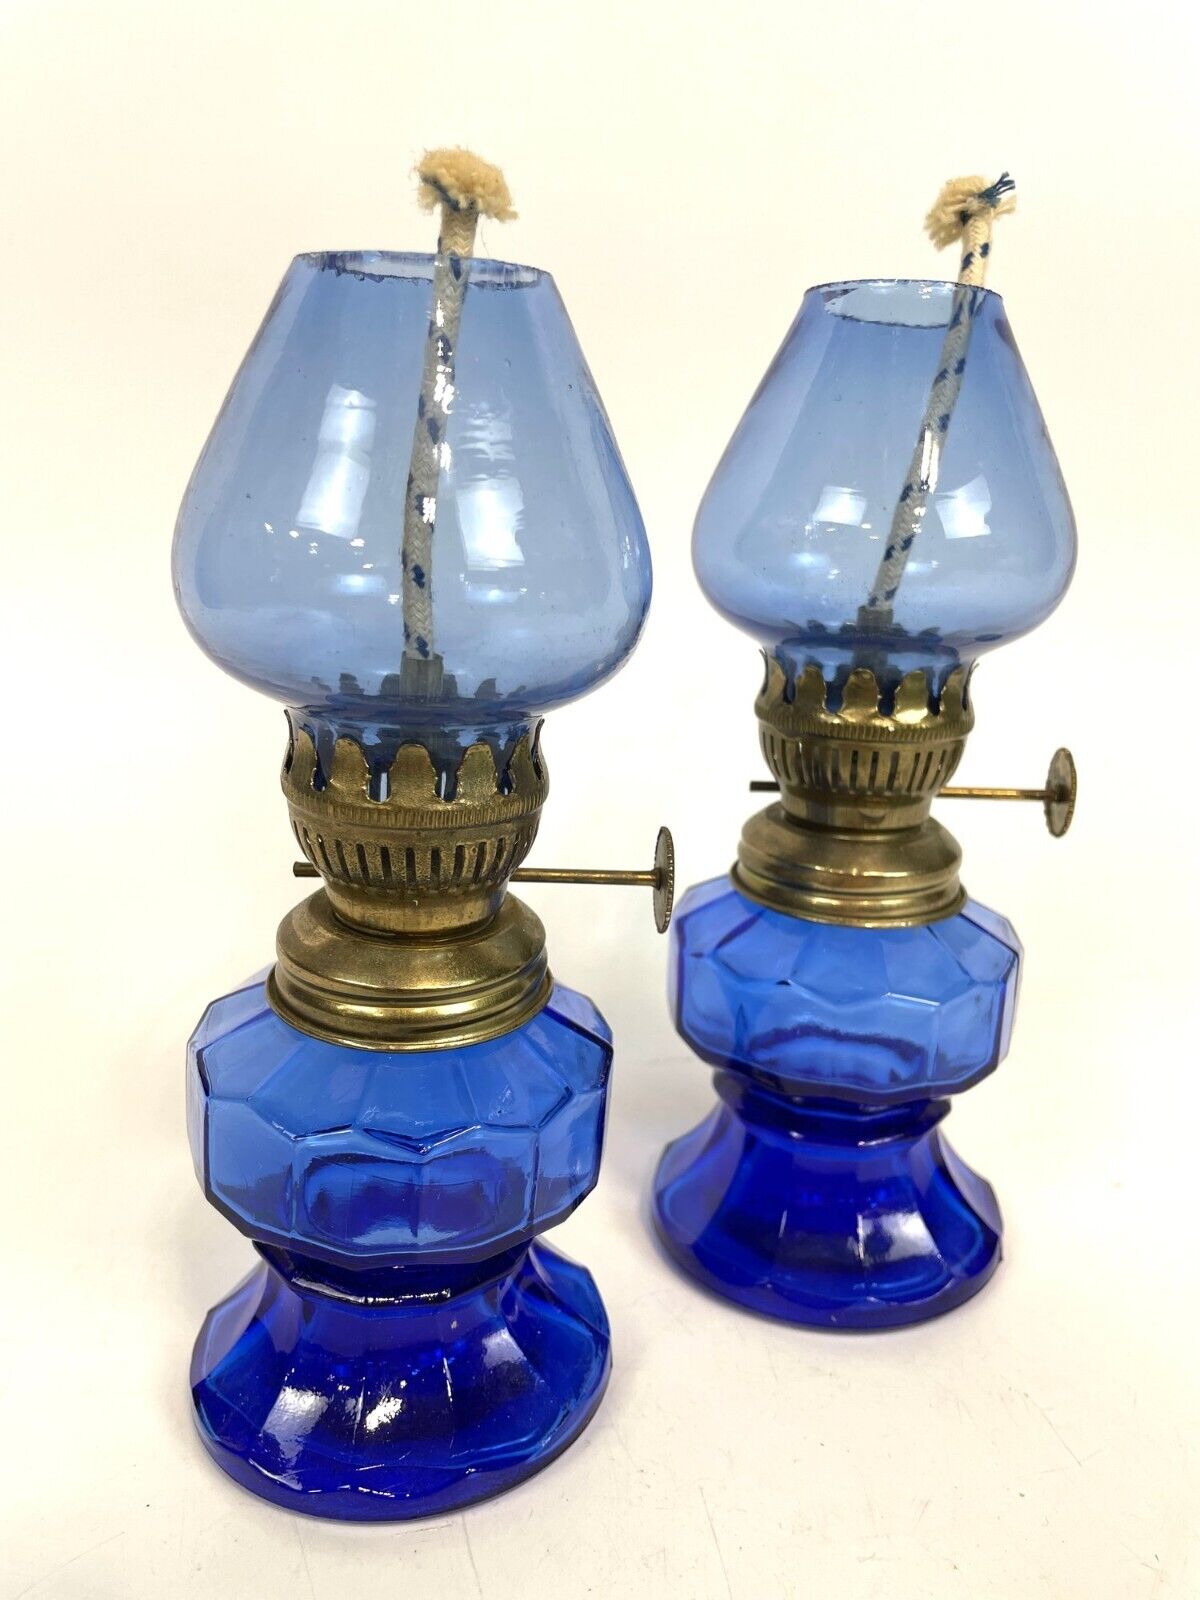 Vintage Cobalt Blue Glass Kerosene Oil Lamps Hurricane Made in Hong Kong 6” Tall